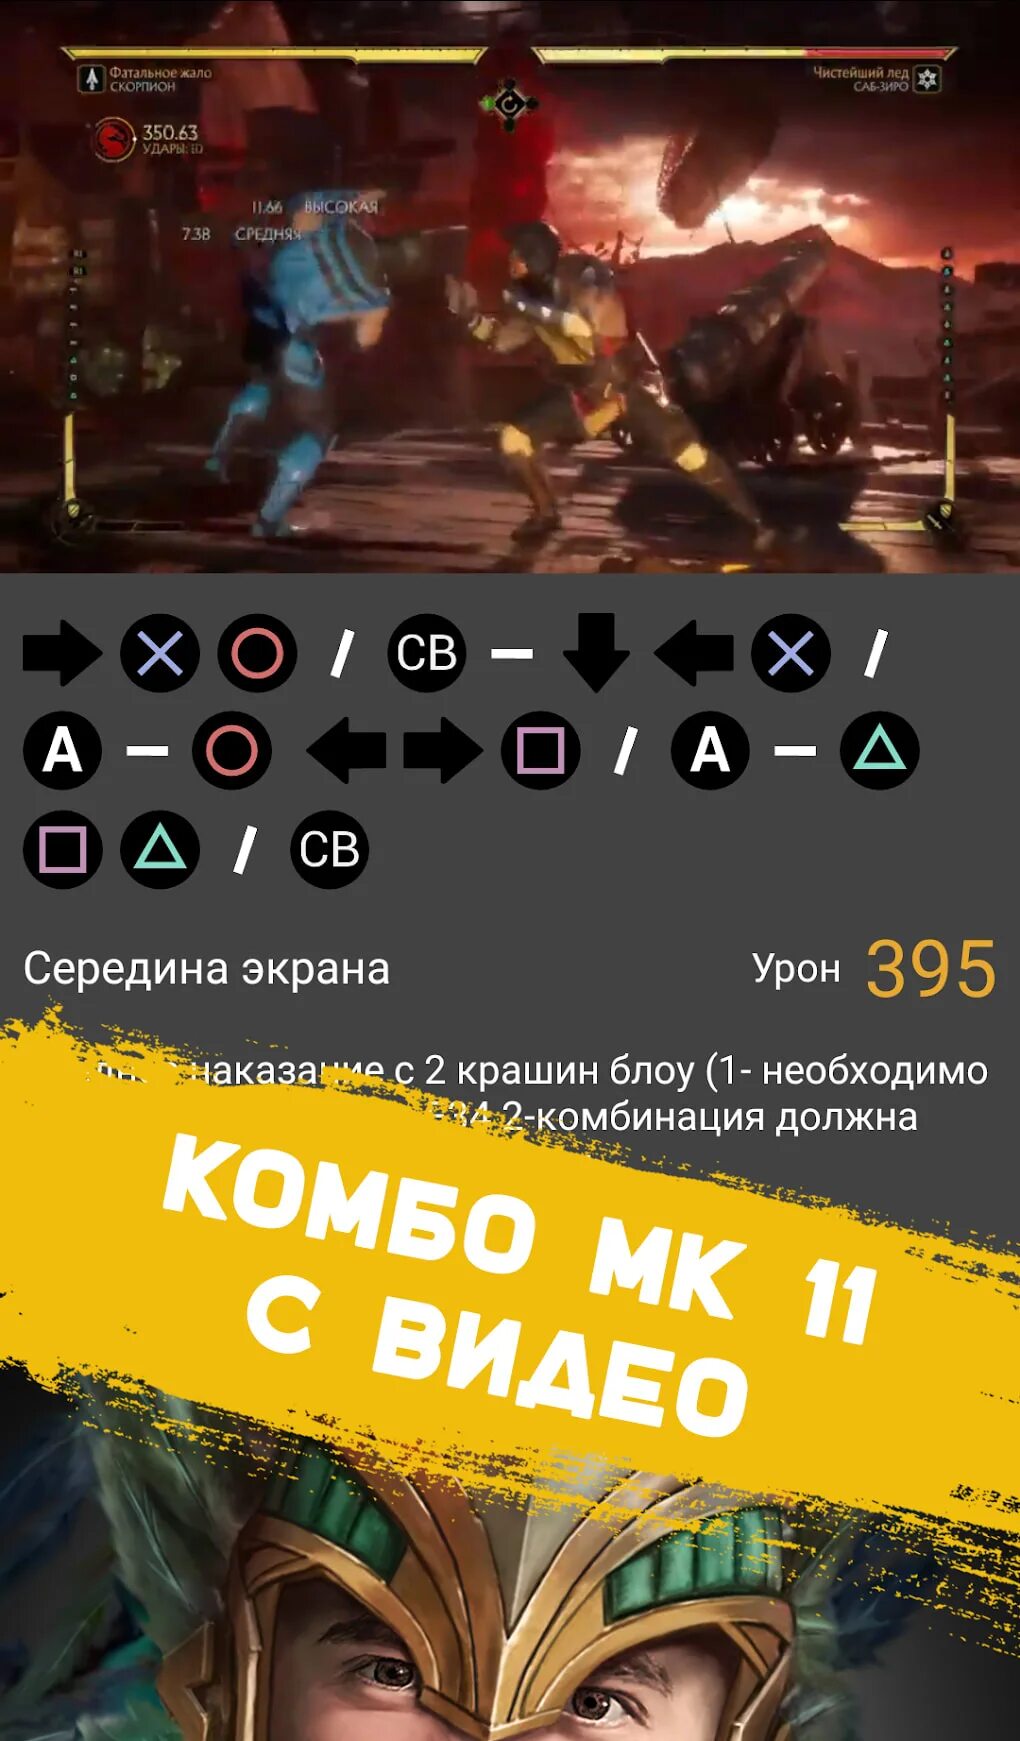 Нуб комбо. Mk11 Скорпион комбо Xbox. Комбо удары в мортал комбат 11 на ps4. Mortal Kombat 11 Scorpion Guide PLAYSTATION. Mortal Kombat ps4 комбинации.